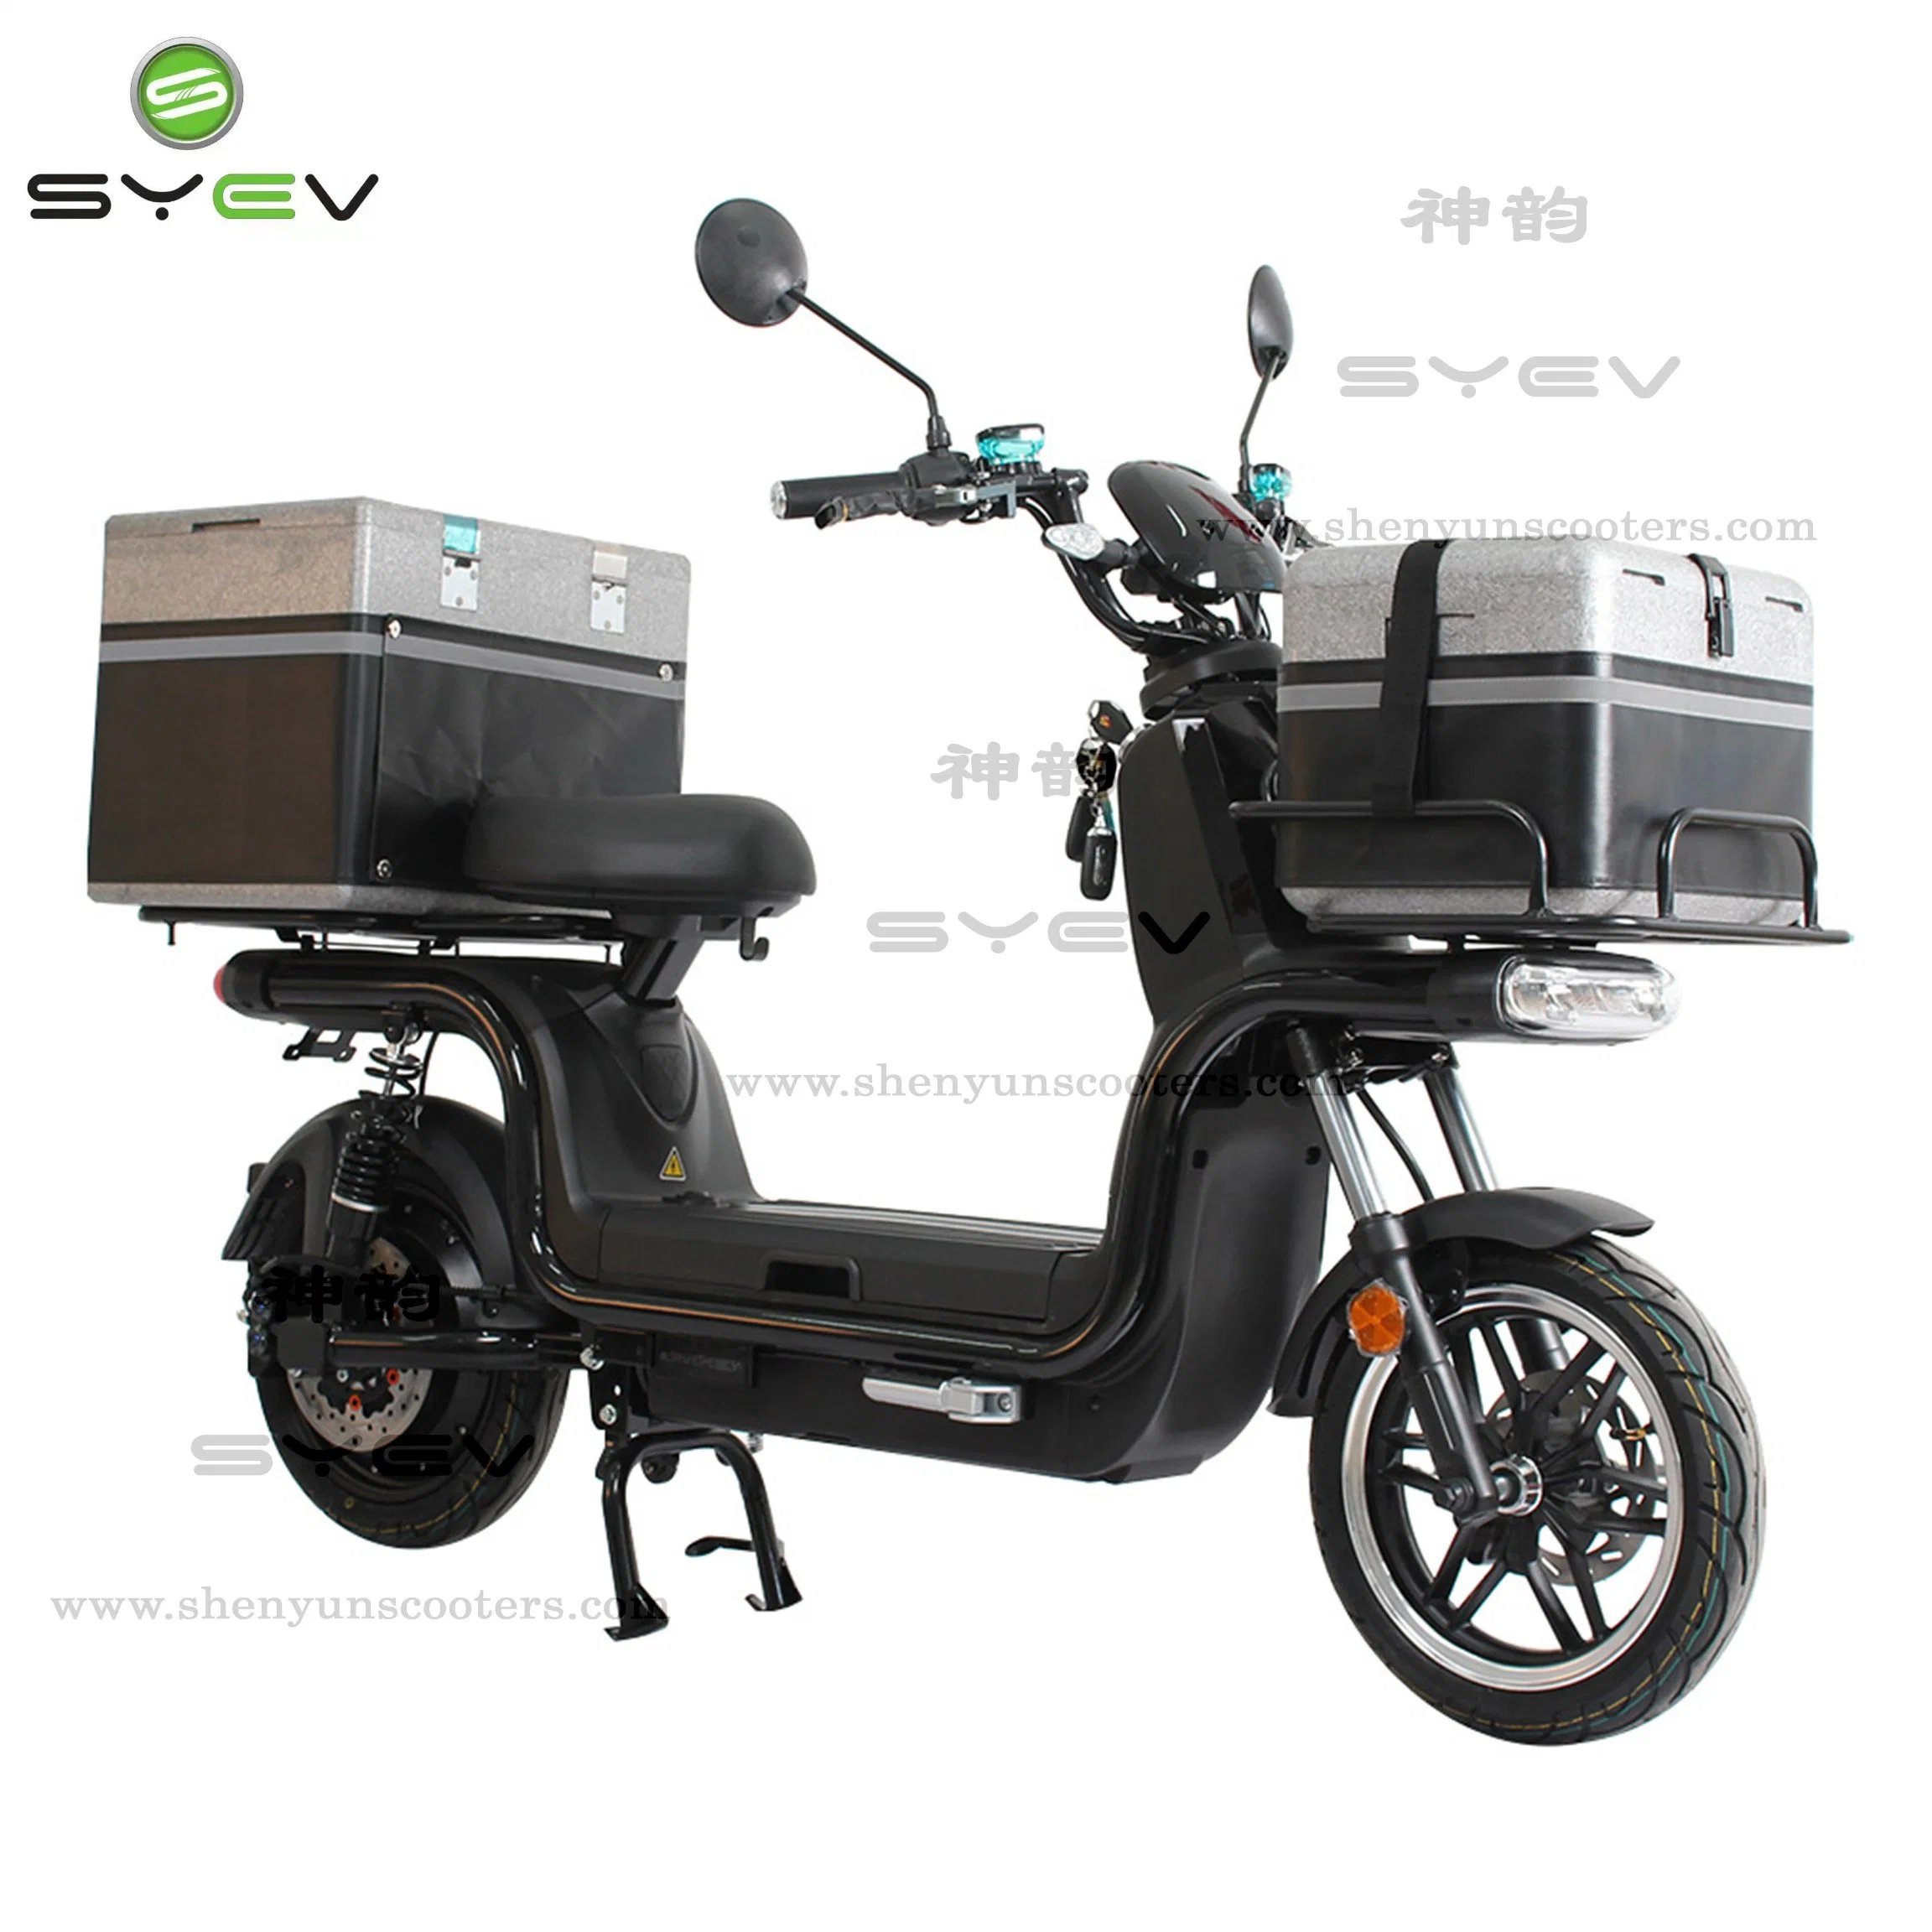 Moto électrique livraison rapide de nourriture E-Scooter Grande boîte arrière électrique Vélo de mobilité